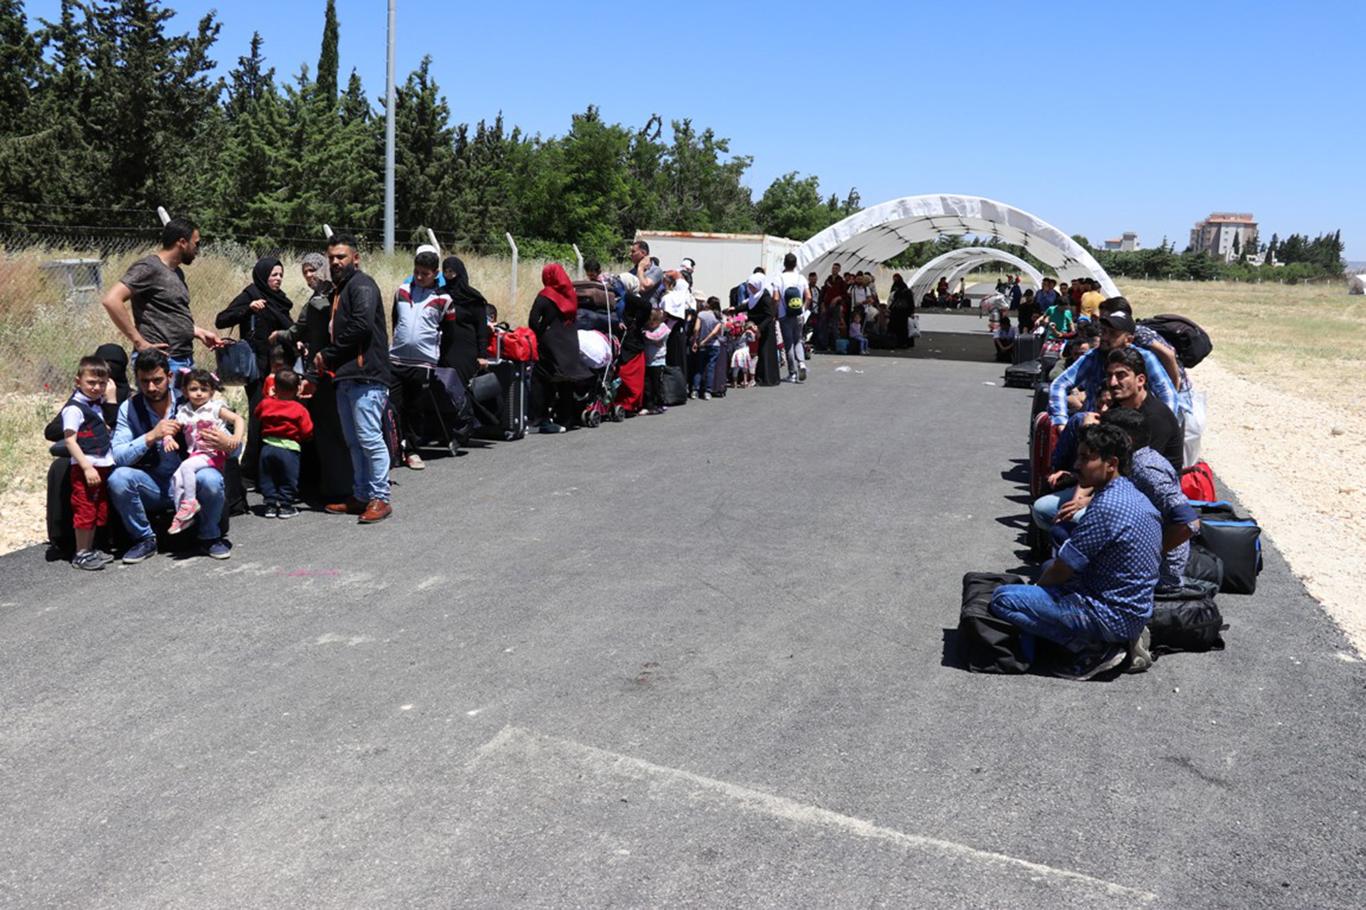 9 bin Suriyeli bayram için ülkesine geçti